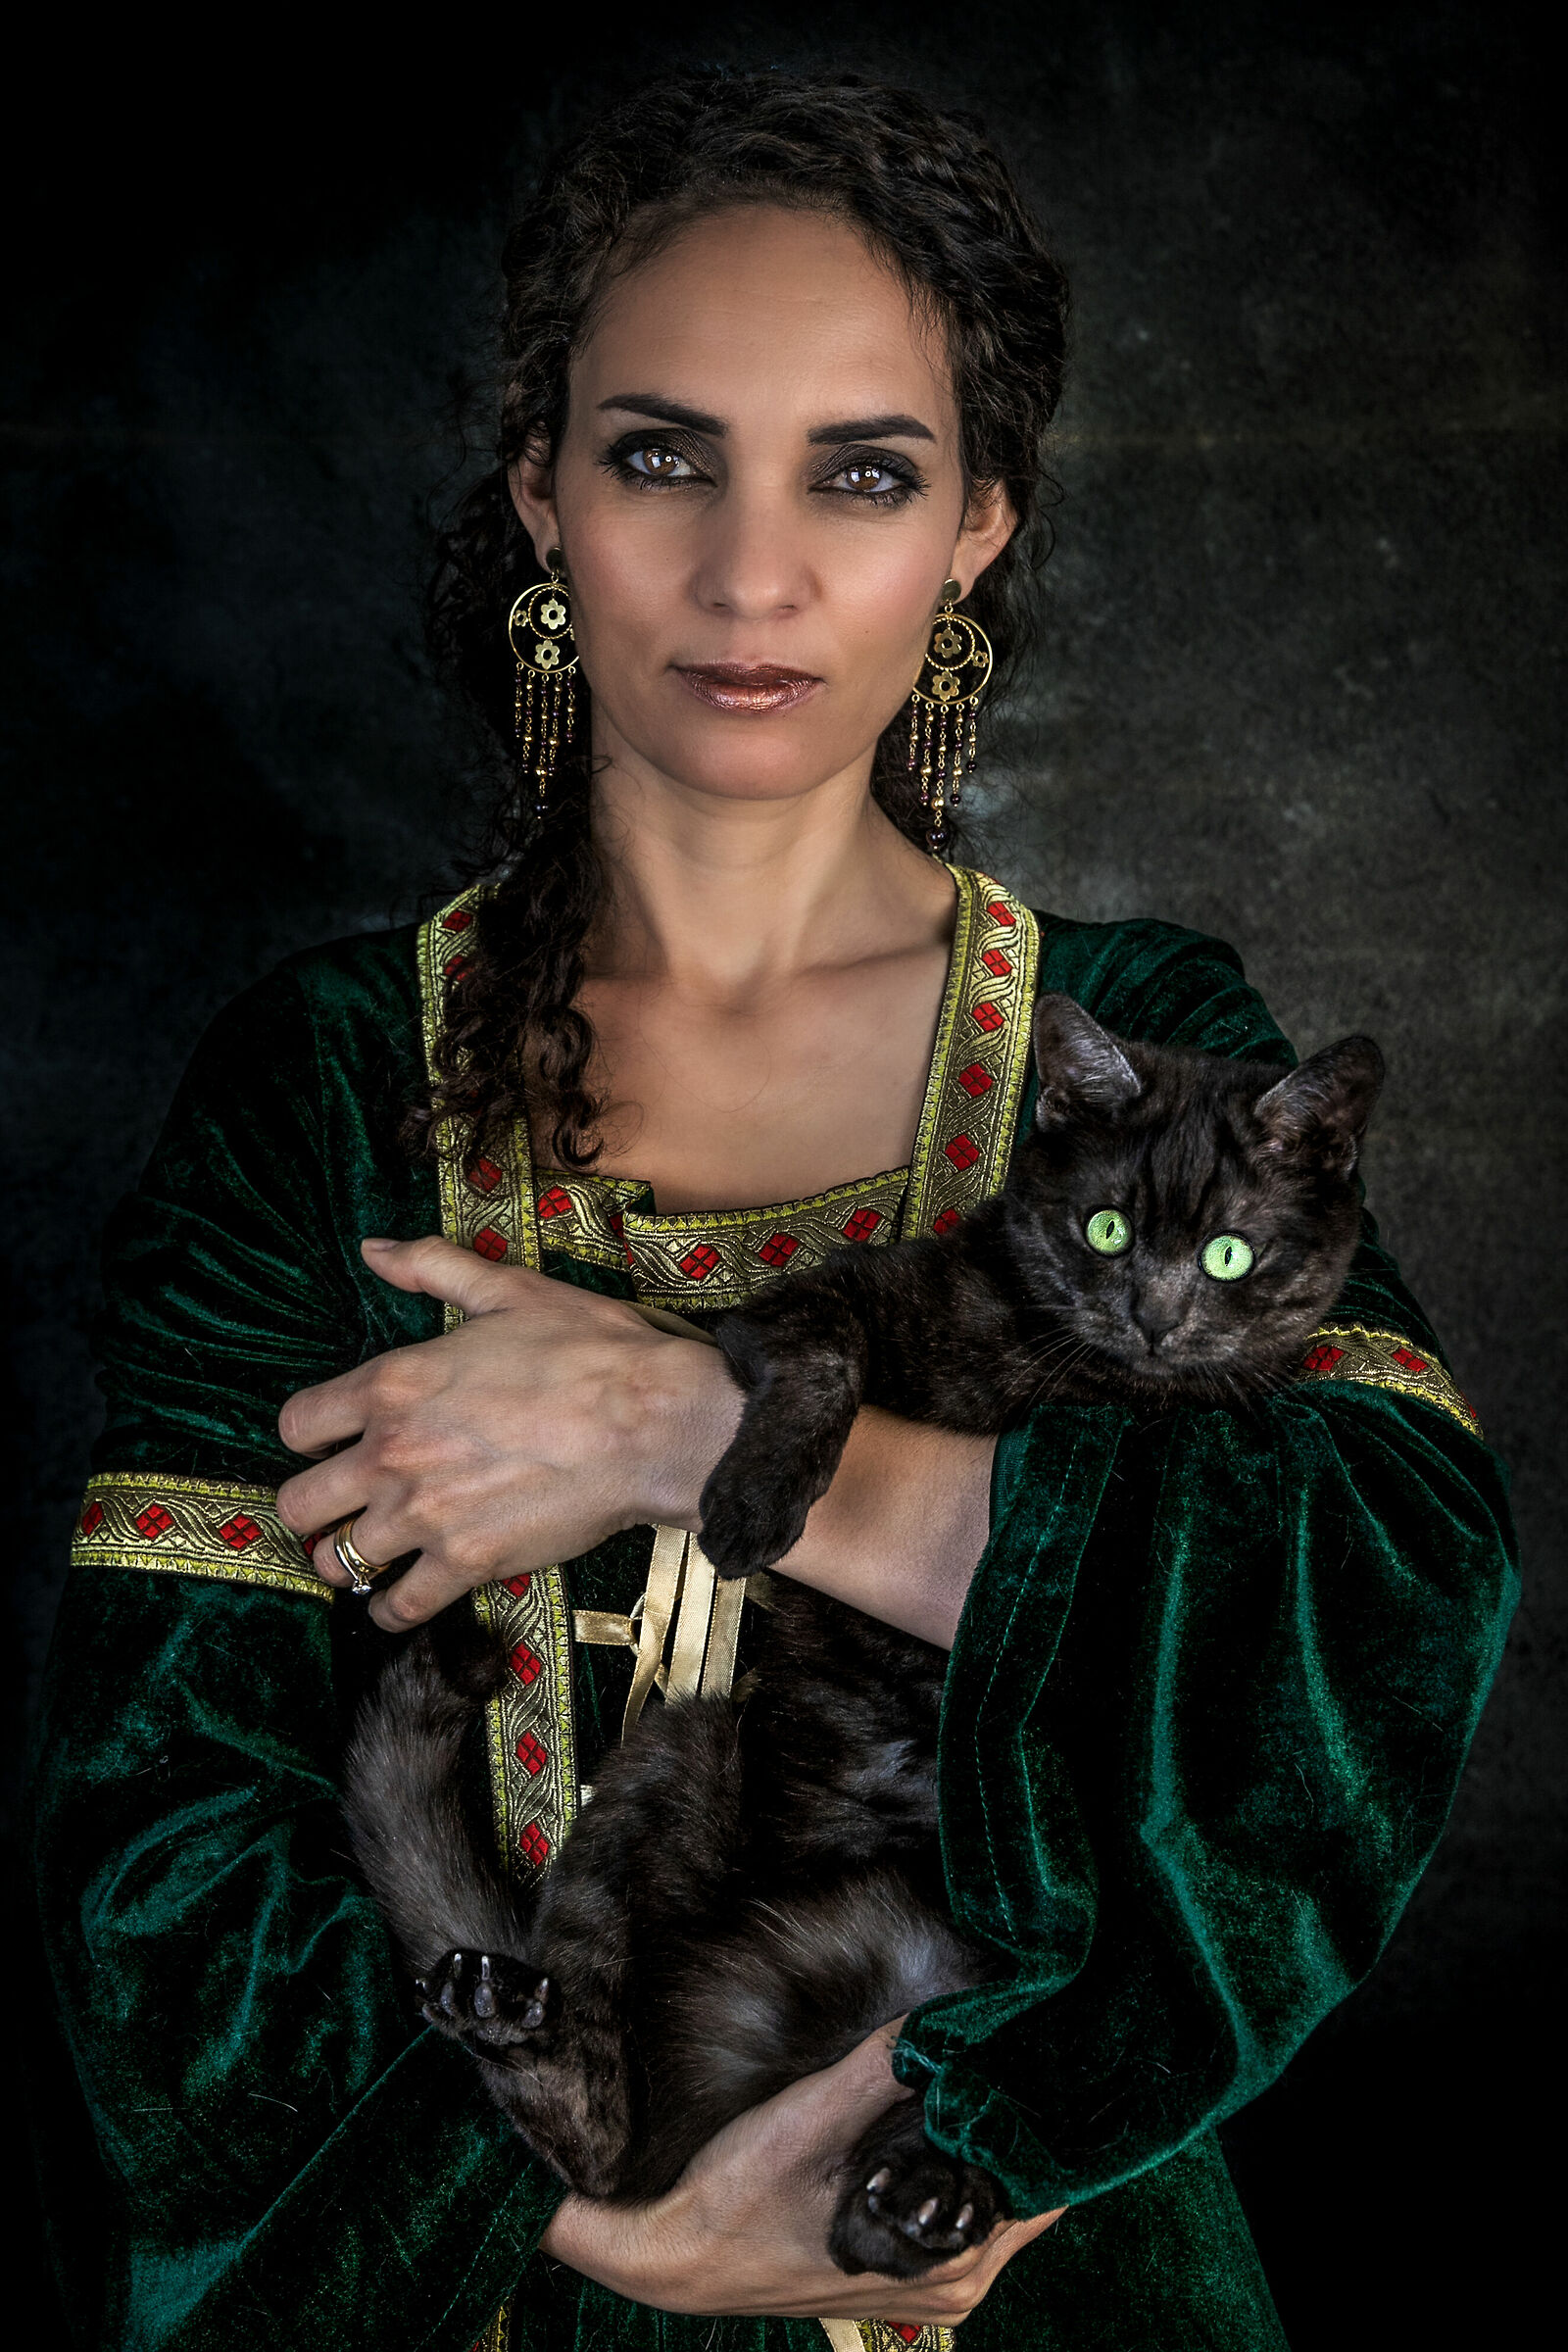 La dama ed il gattino...